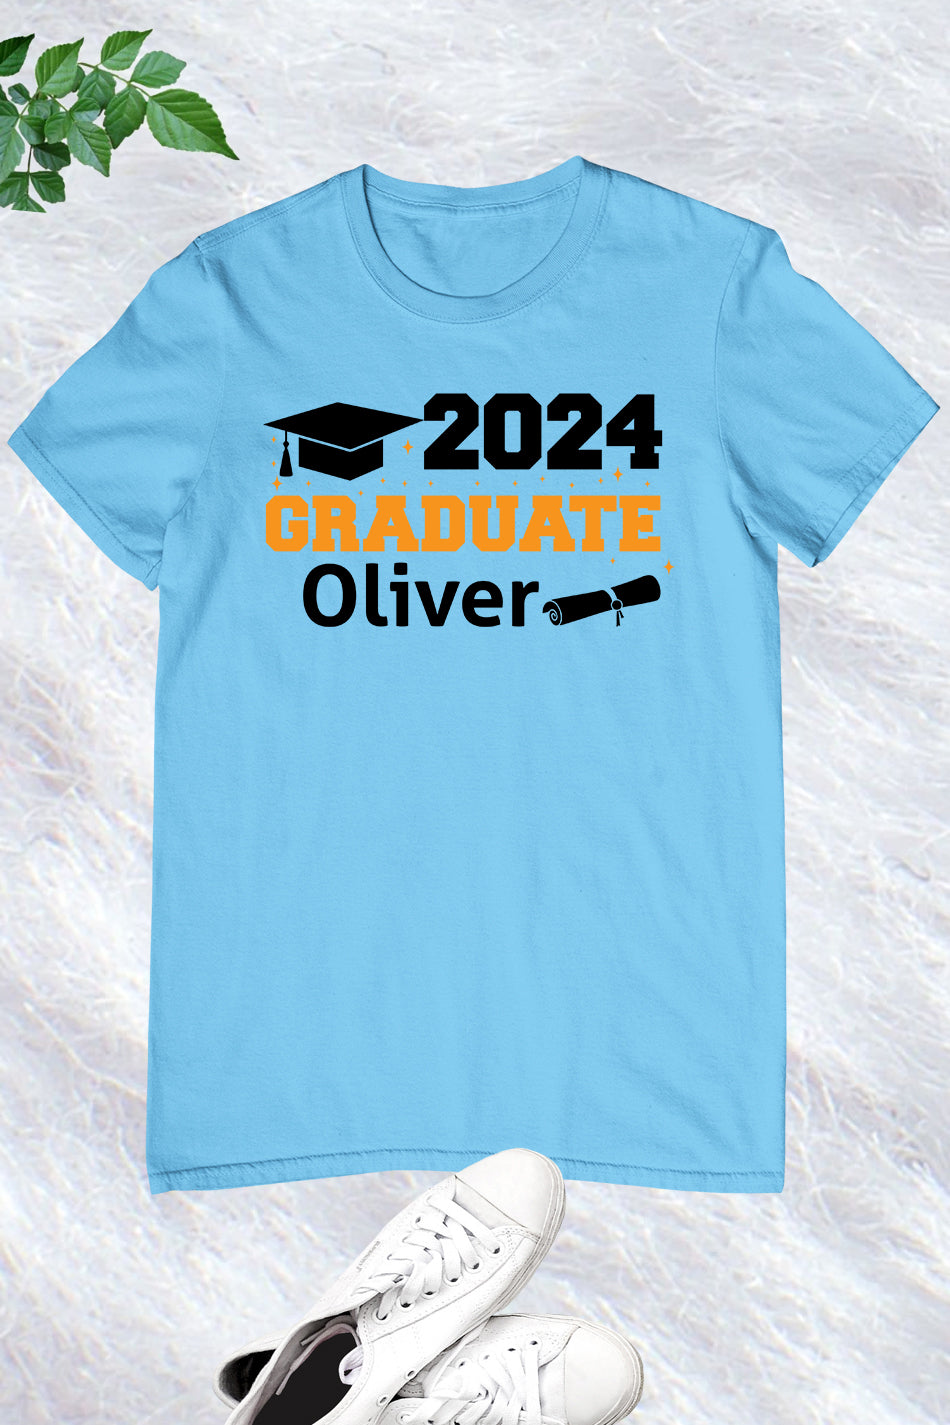 2024 Graduate Shirt With Custom Name